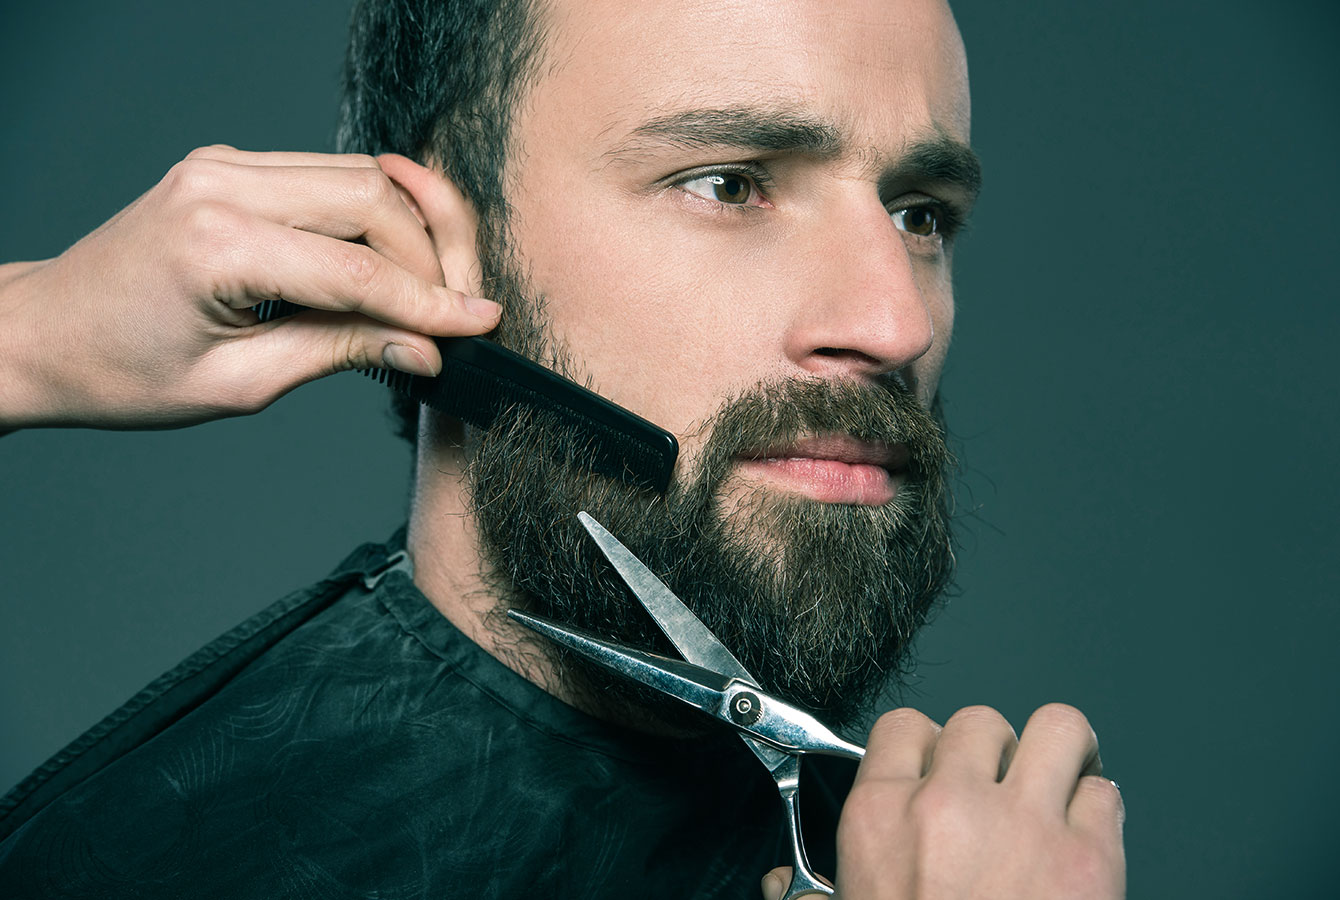 Profesionální holič upravuje klientské vousy.